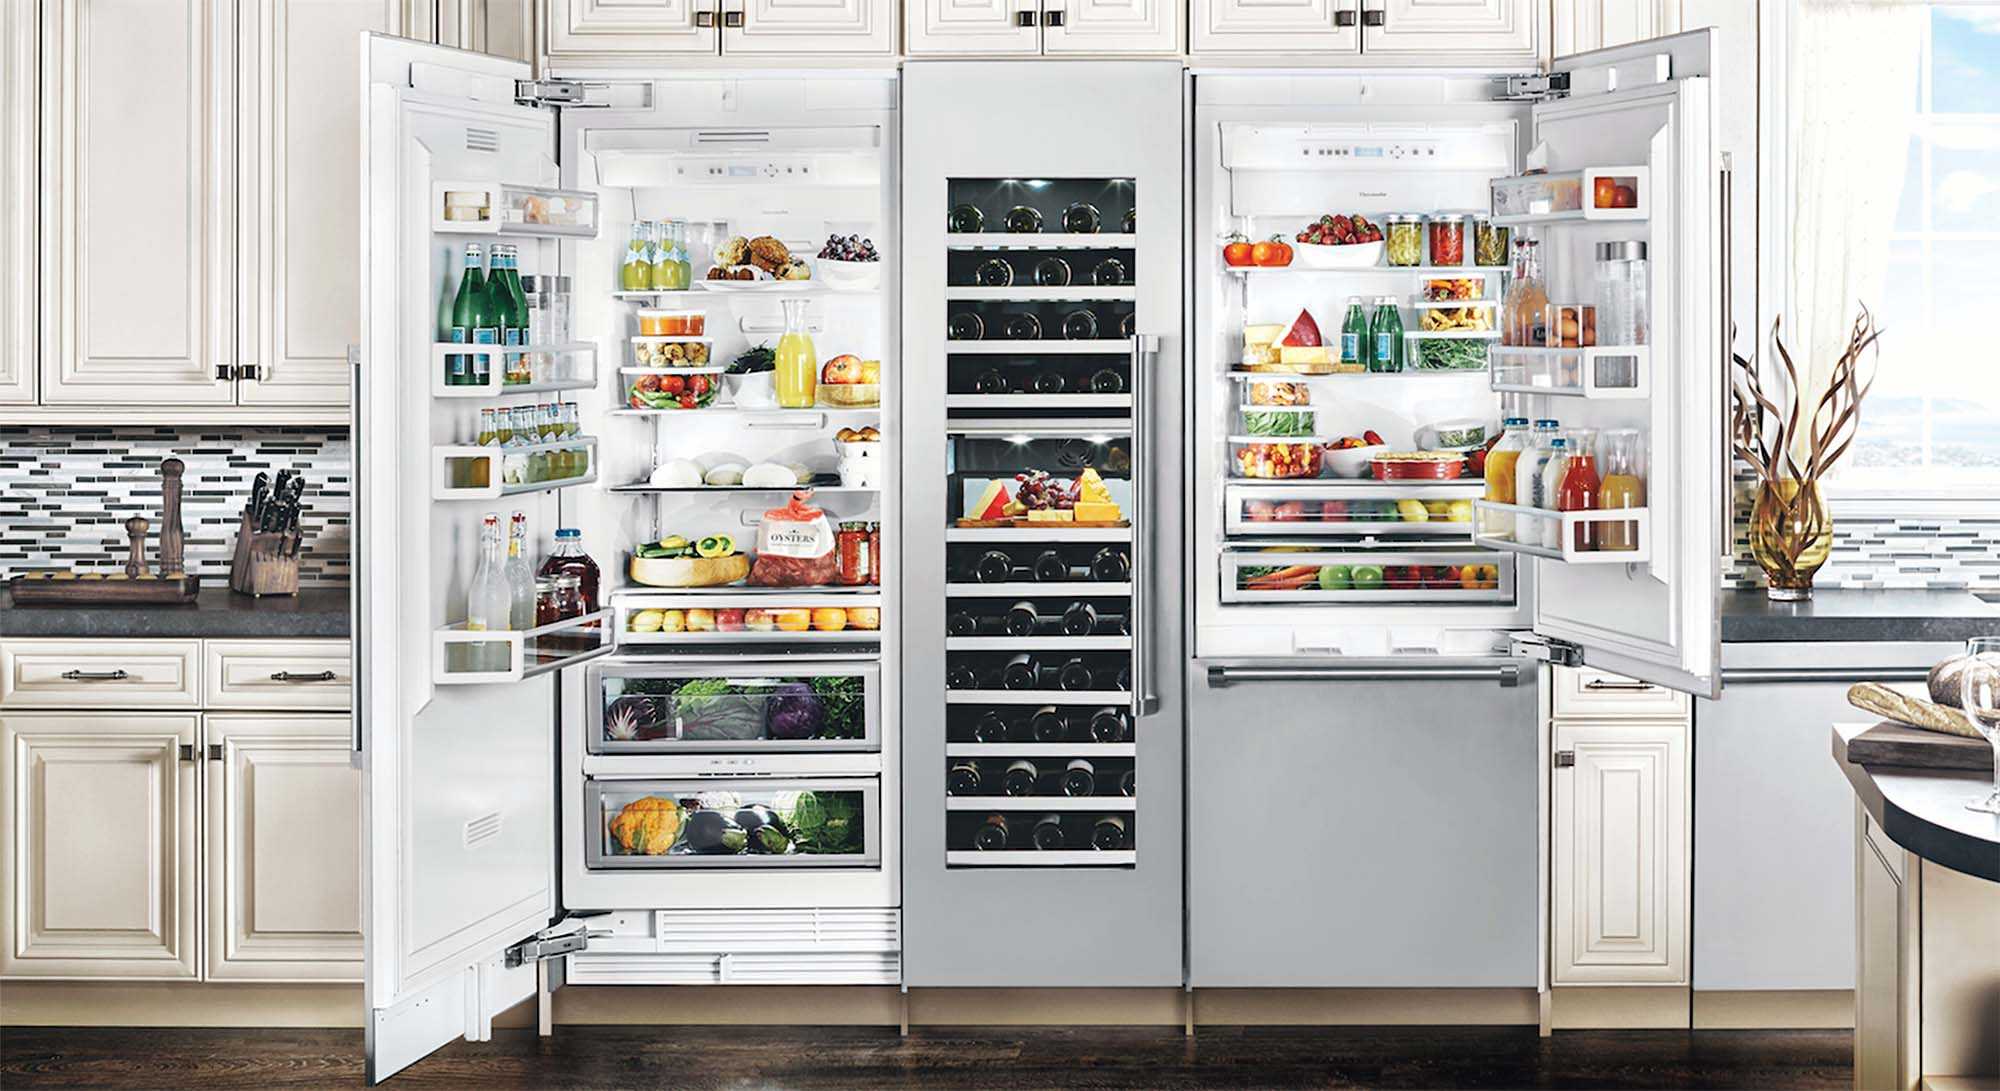 10 лучших встраиваемых холодильников 2021 года